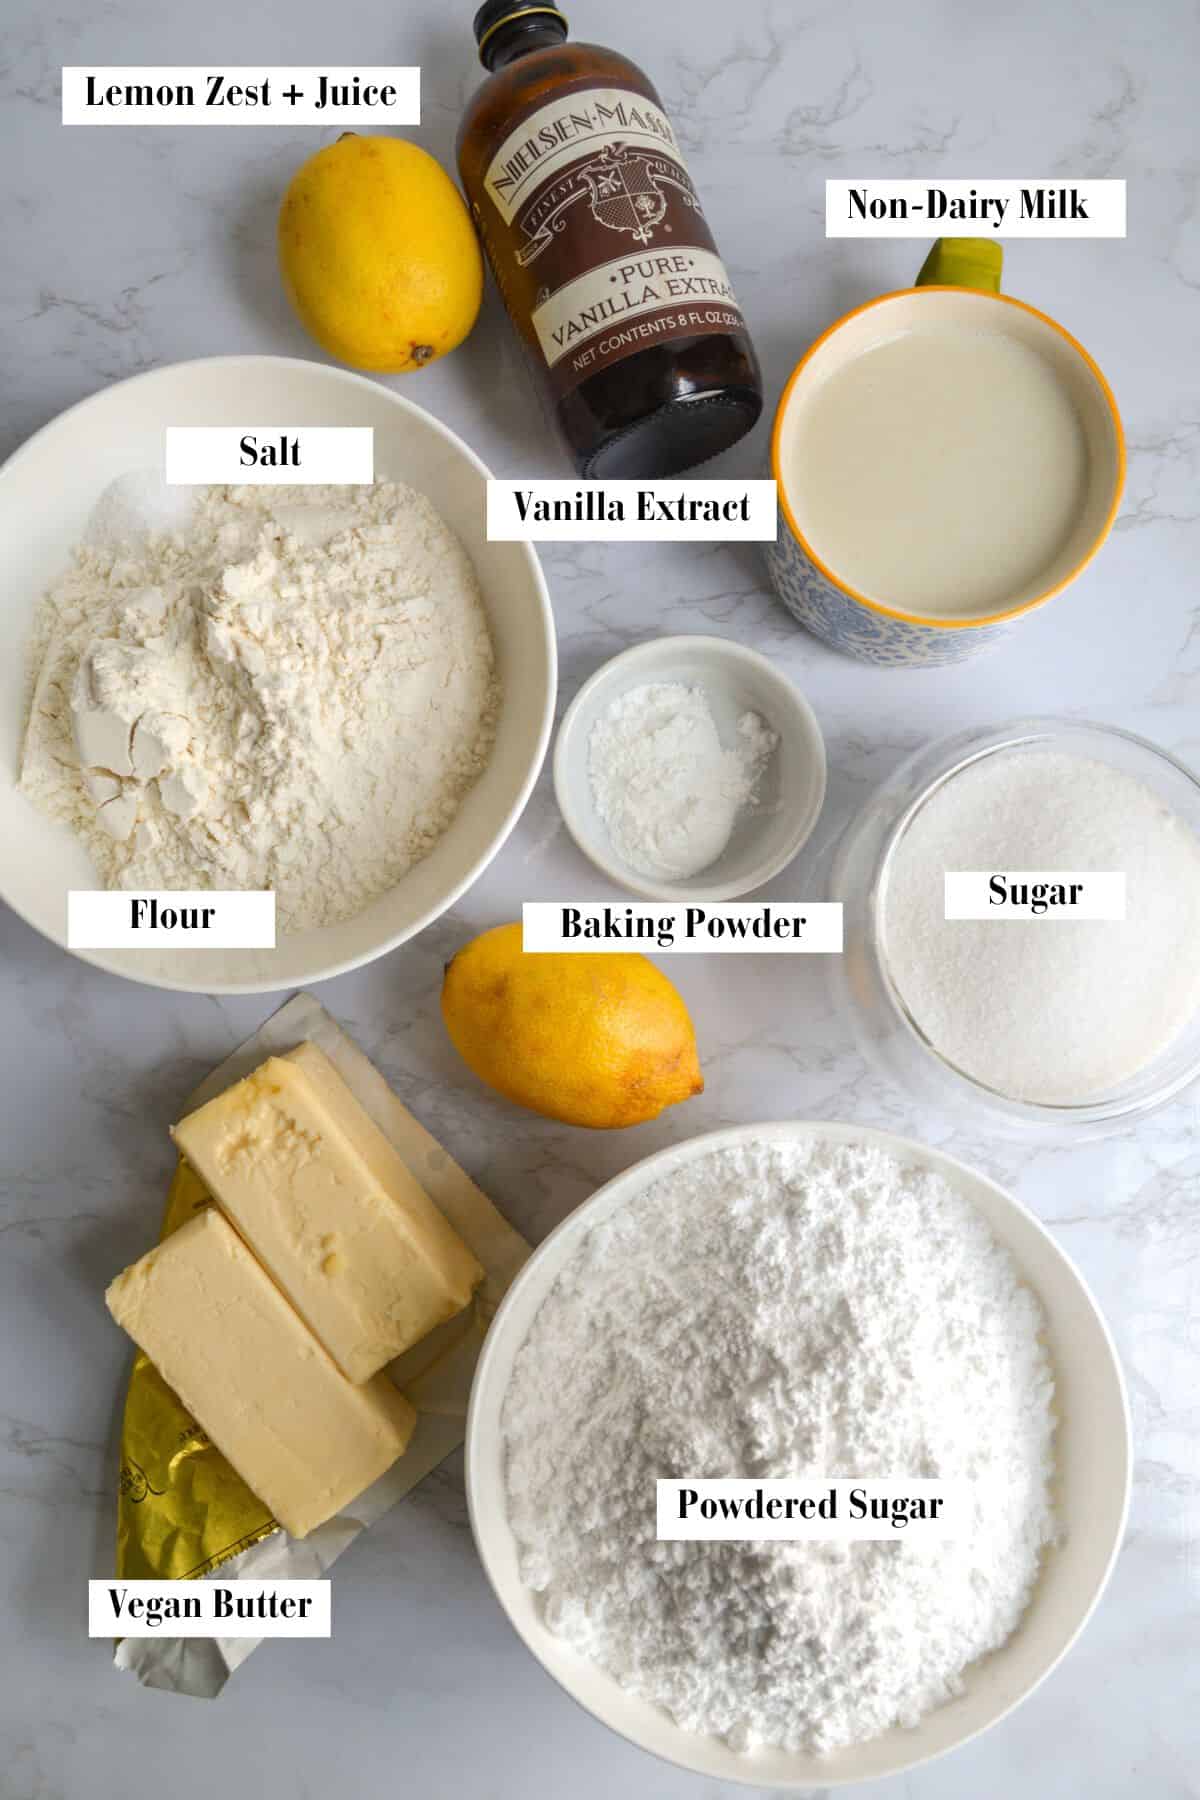 Ingredients to make this Vegan Lemon Cake recipe.